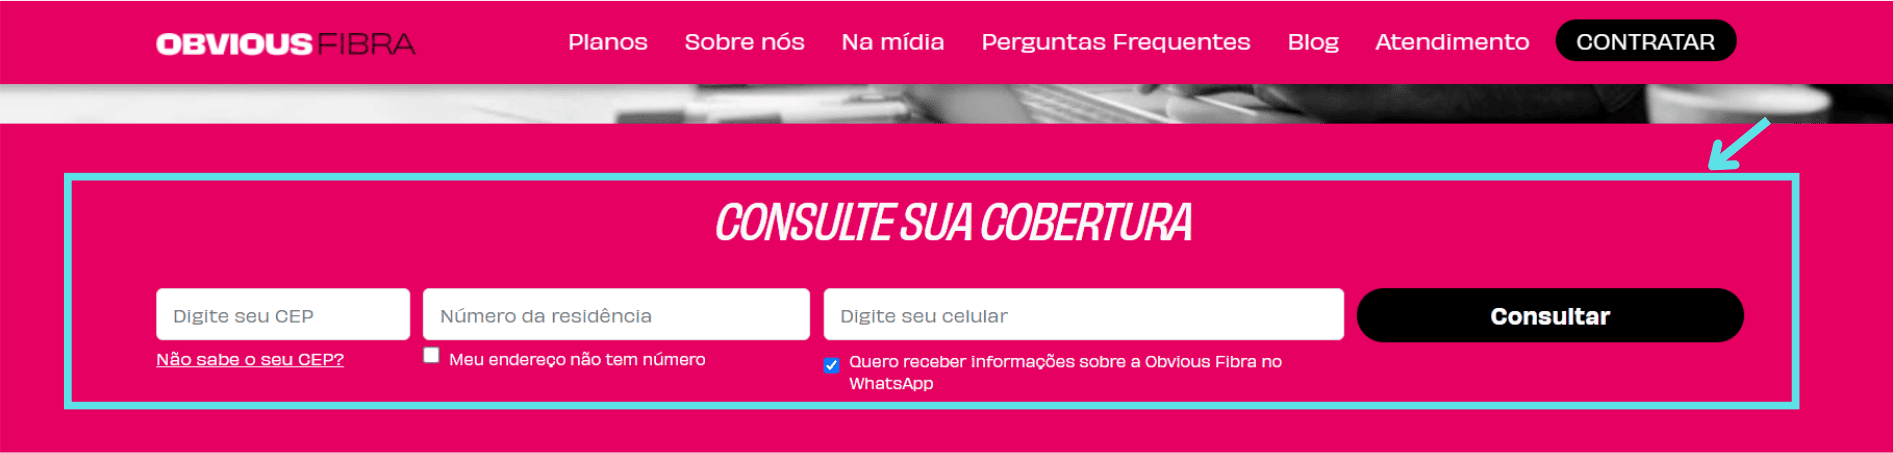 Captura de tela do site OBVIOUS com instruções de como realizar a consulta de cobertura